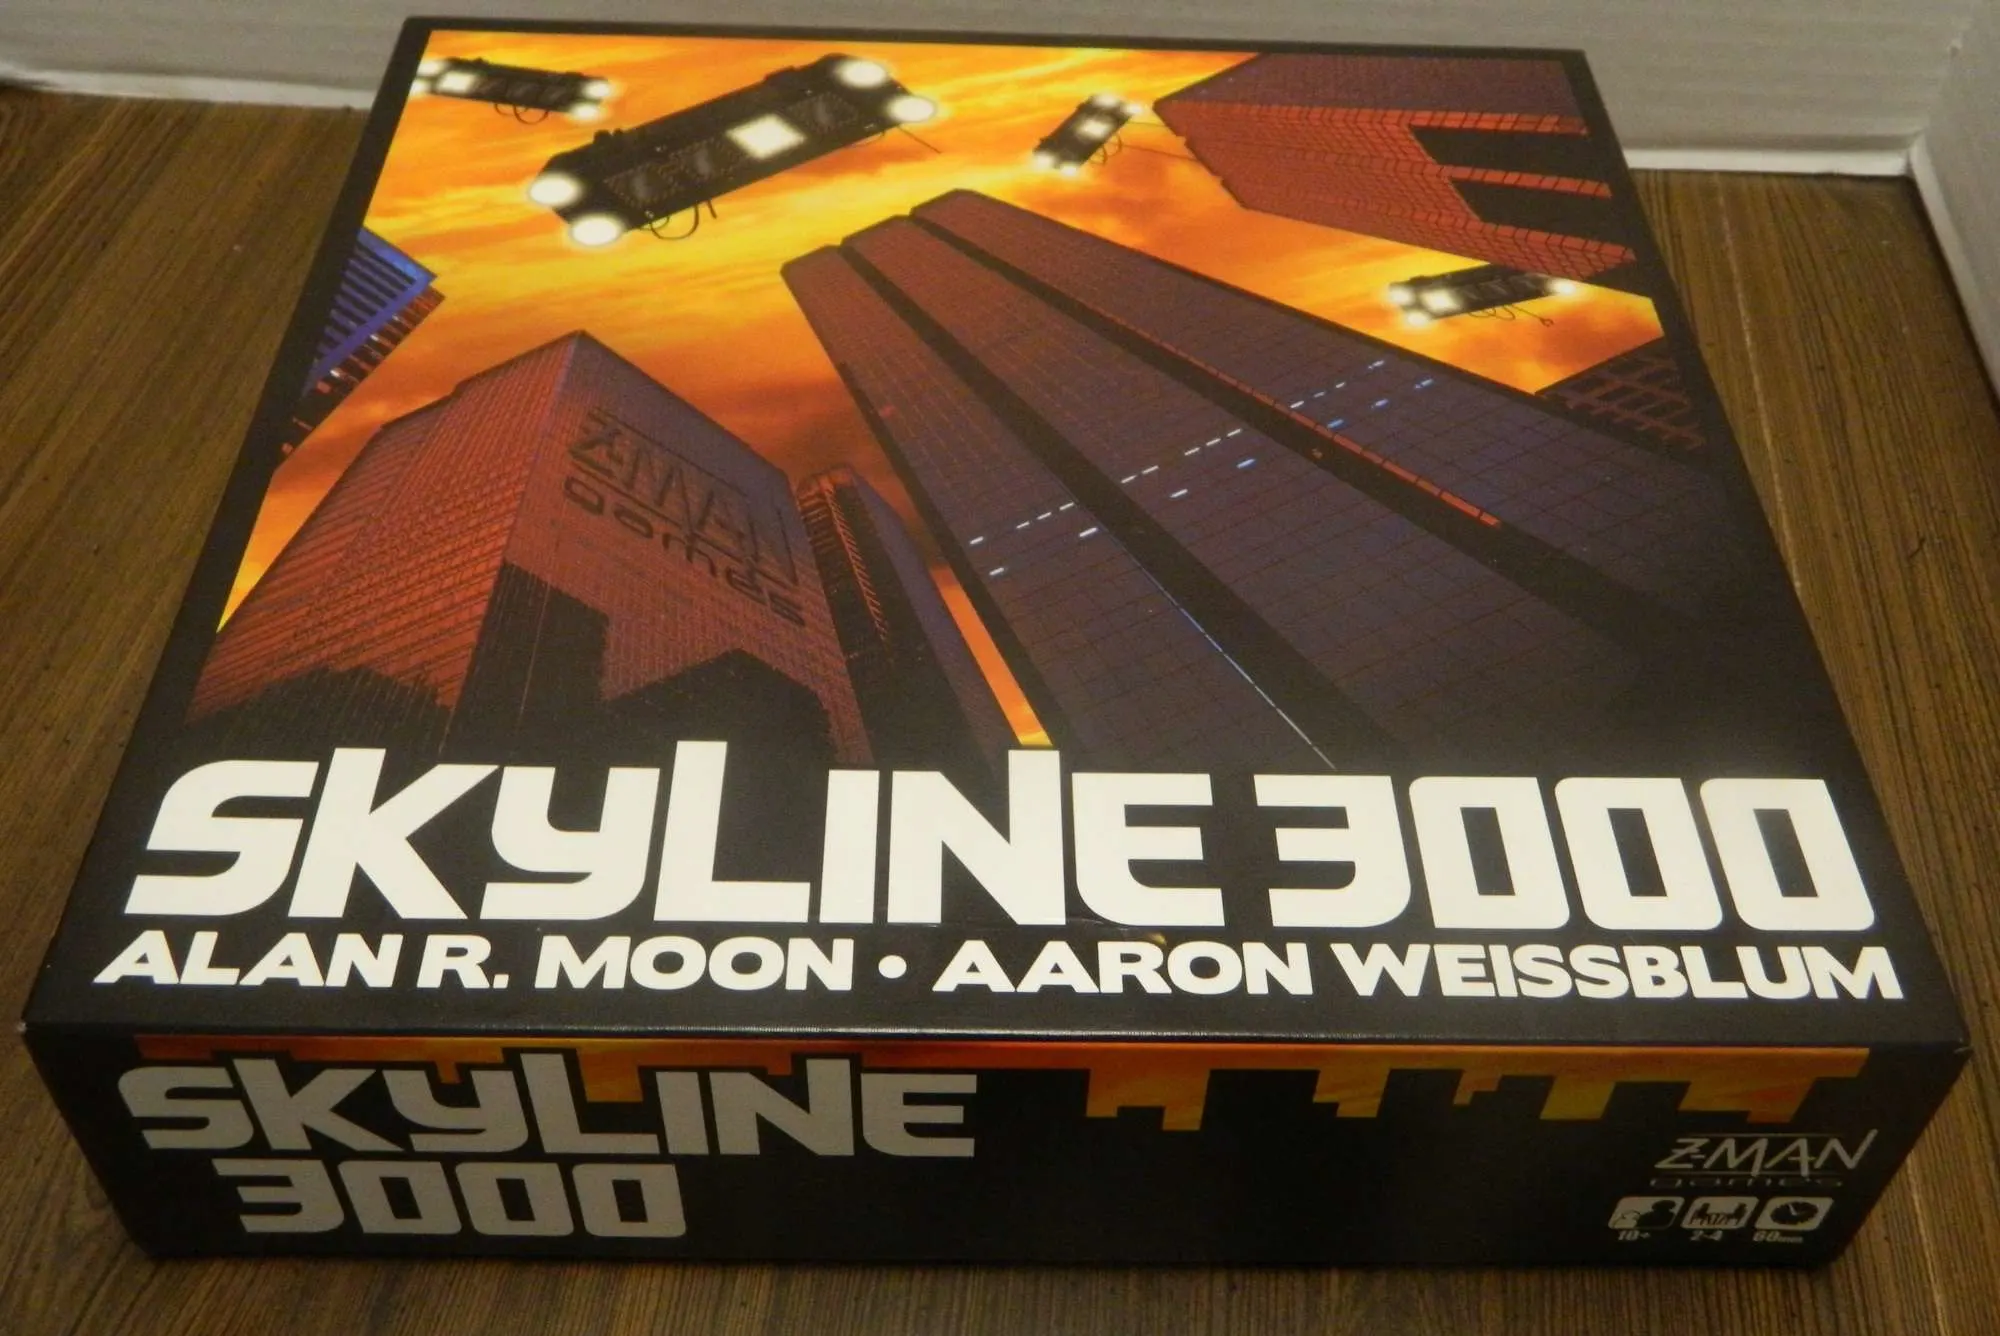 Skyline 3000 Box